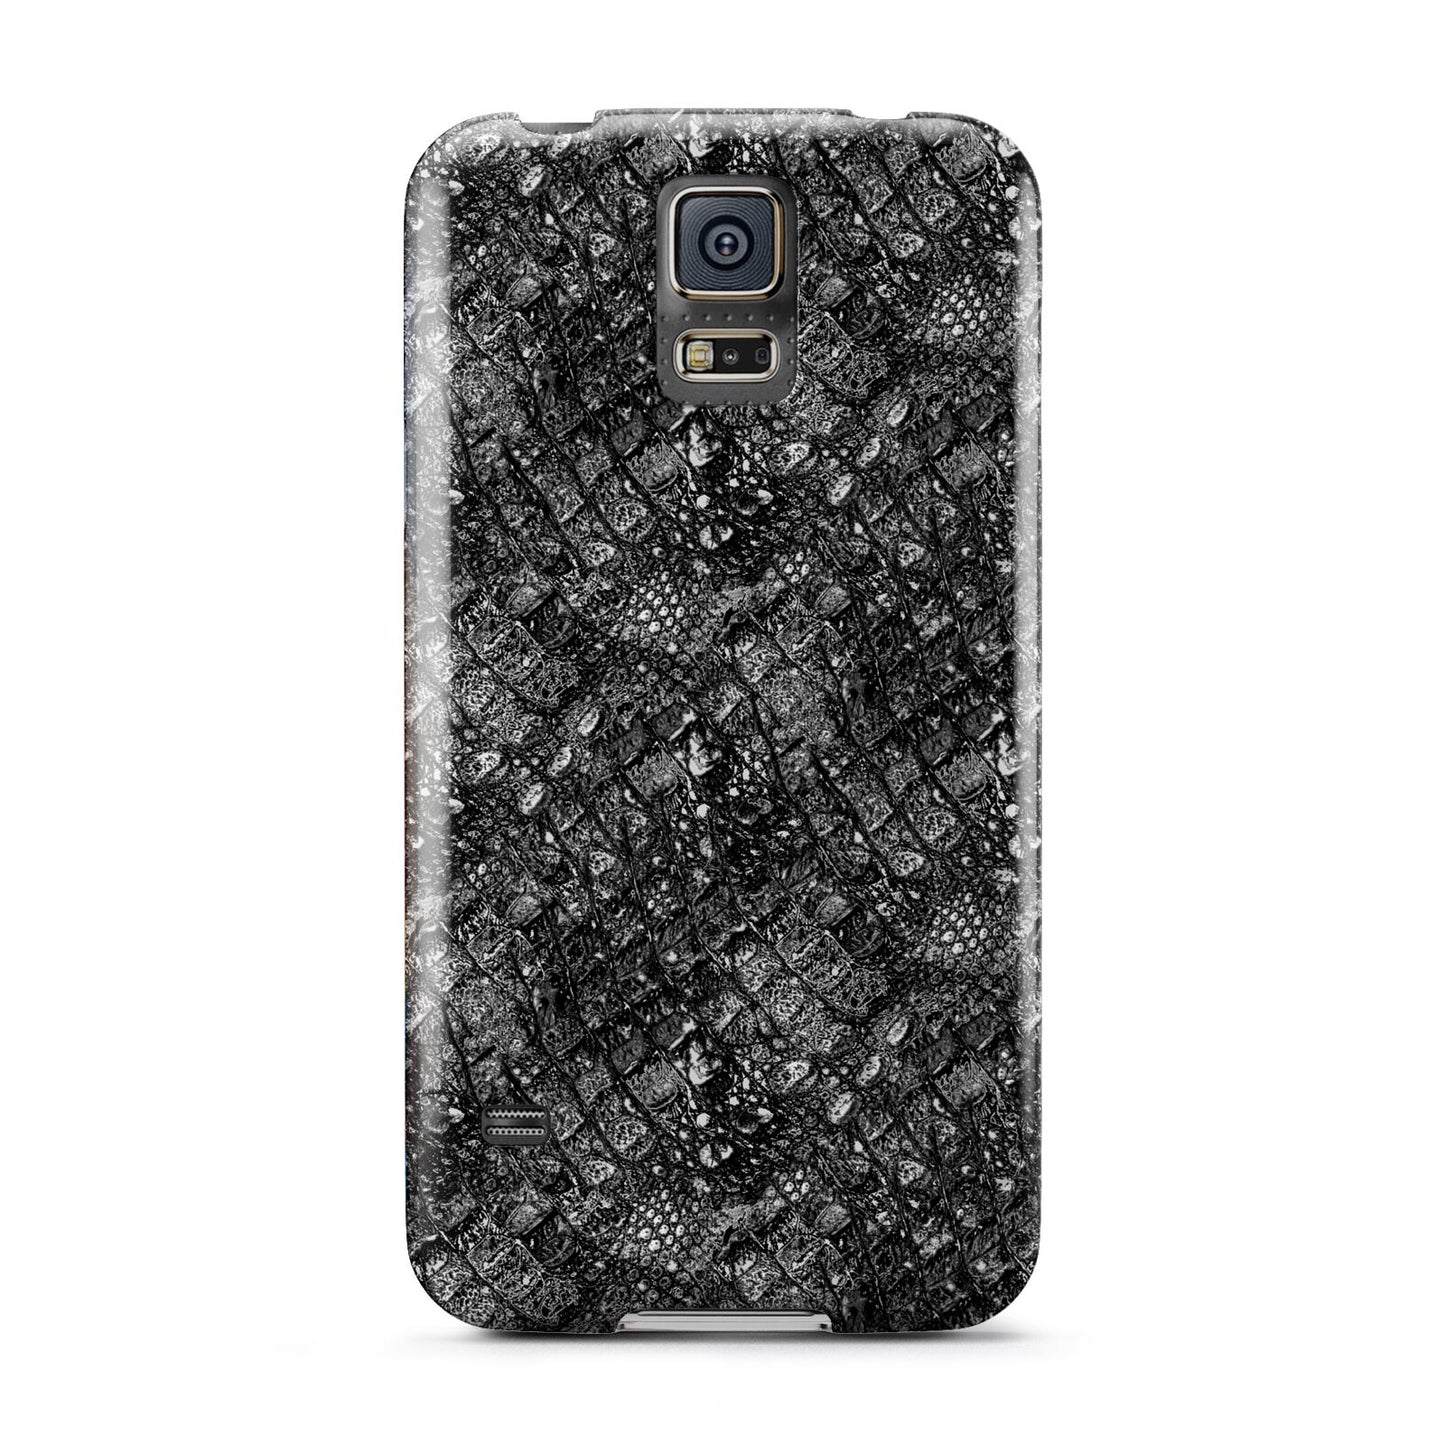 Snakeskin Design Samsung Galaxy S5 Case